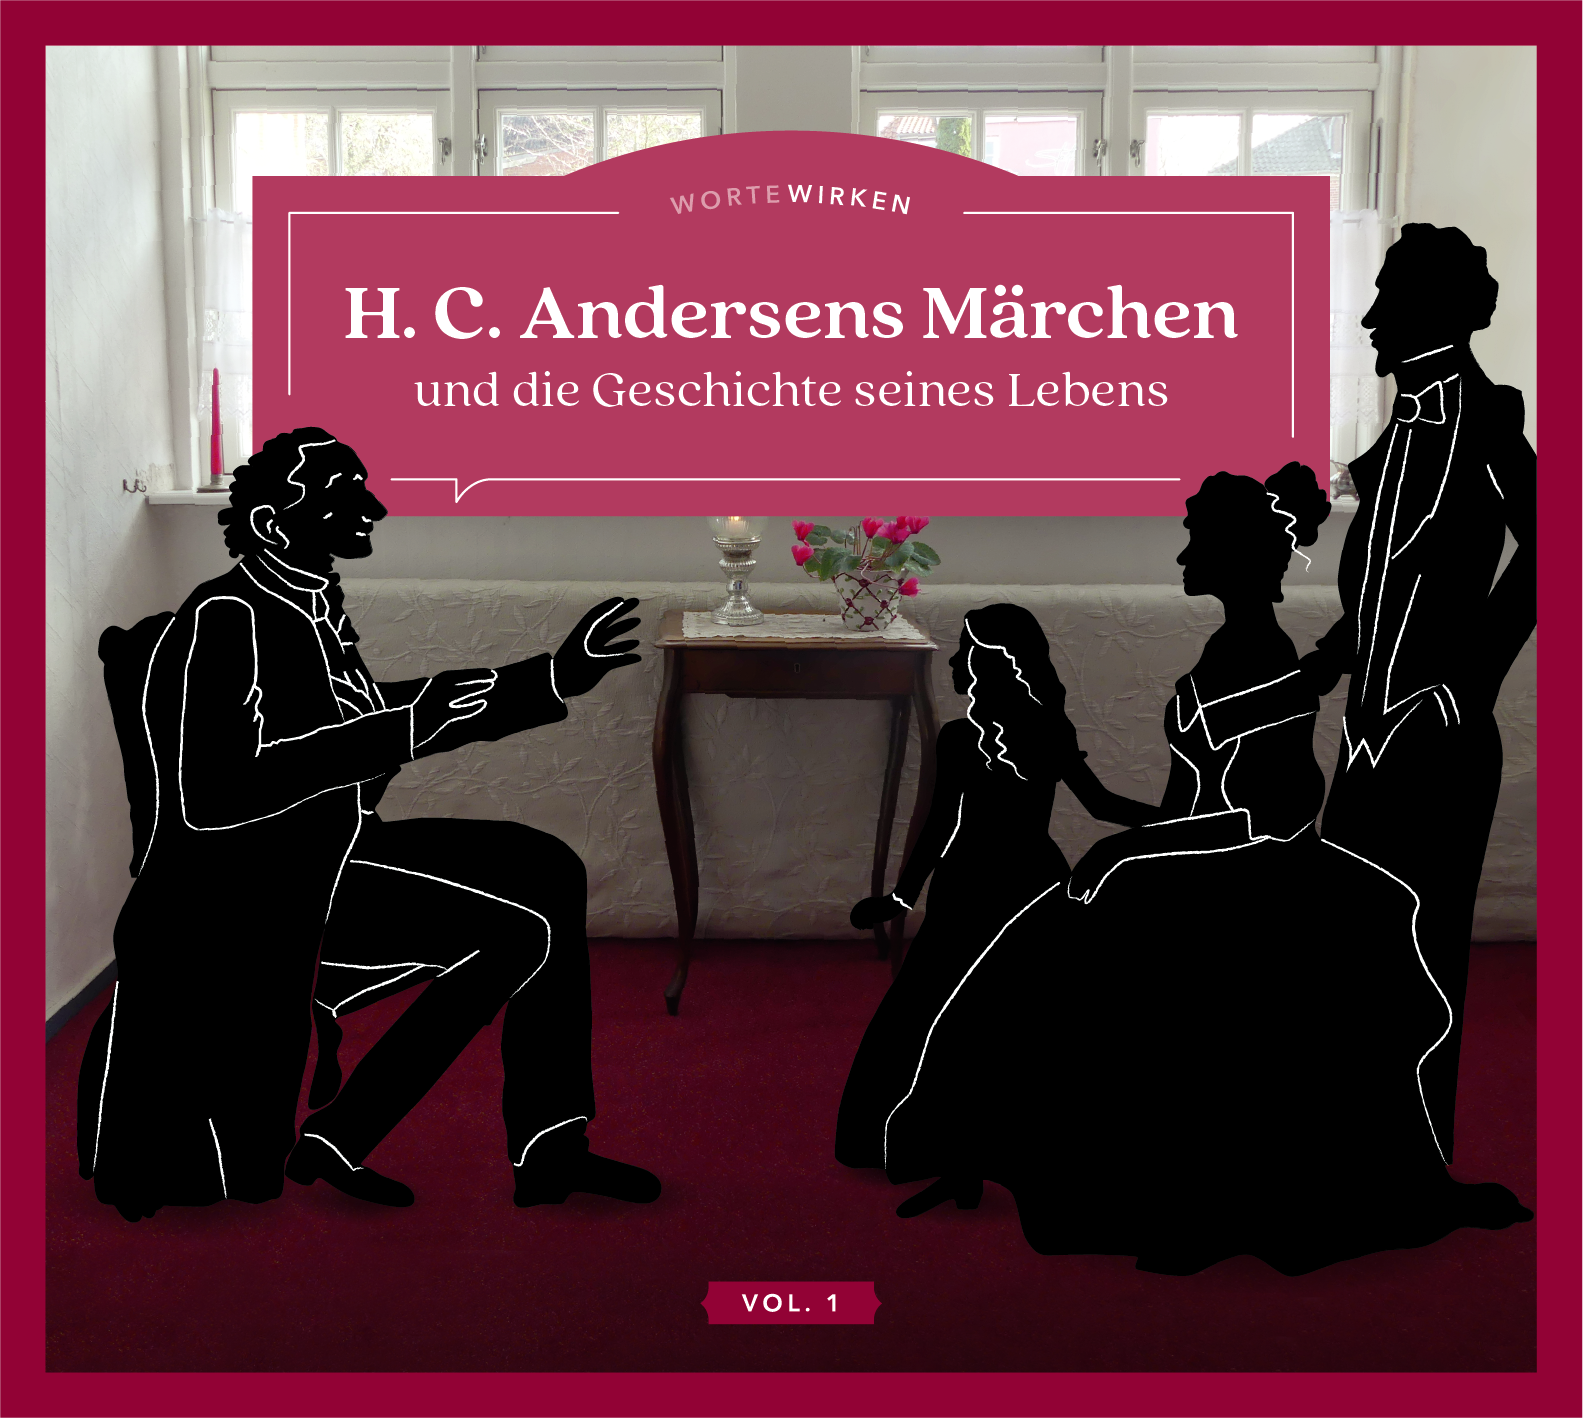 H. C. Andersens Märchen Vol. 1